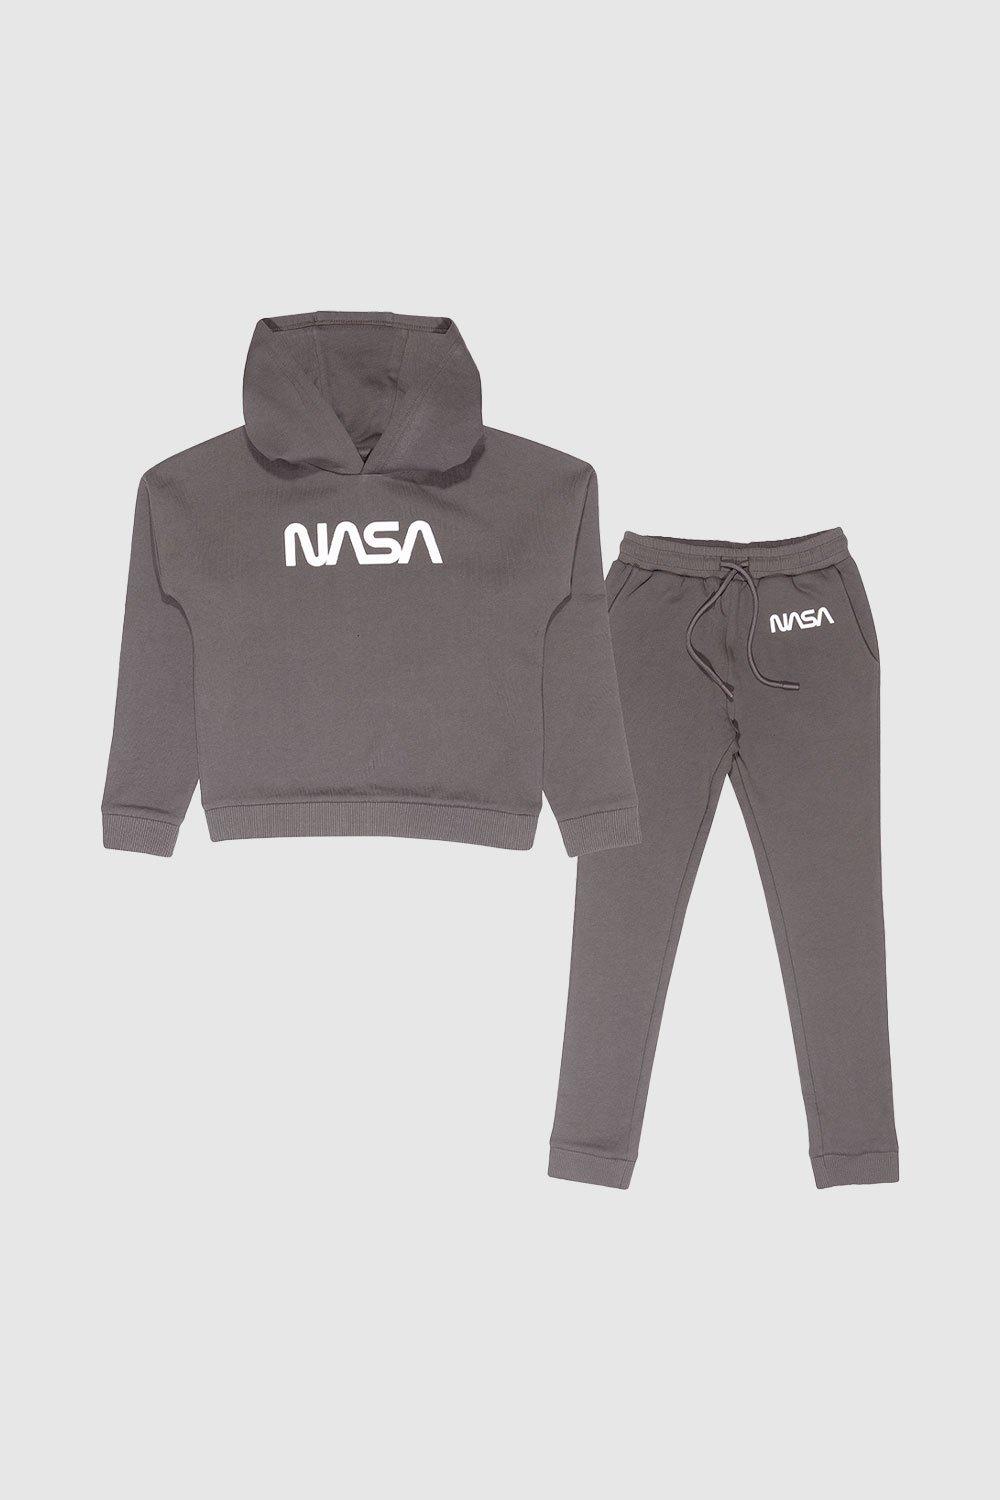 Комплект из худи и спортивных штанов Комплект из спортивных штанов и спортивных штанов NASA, серый